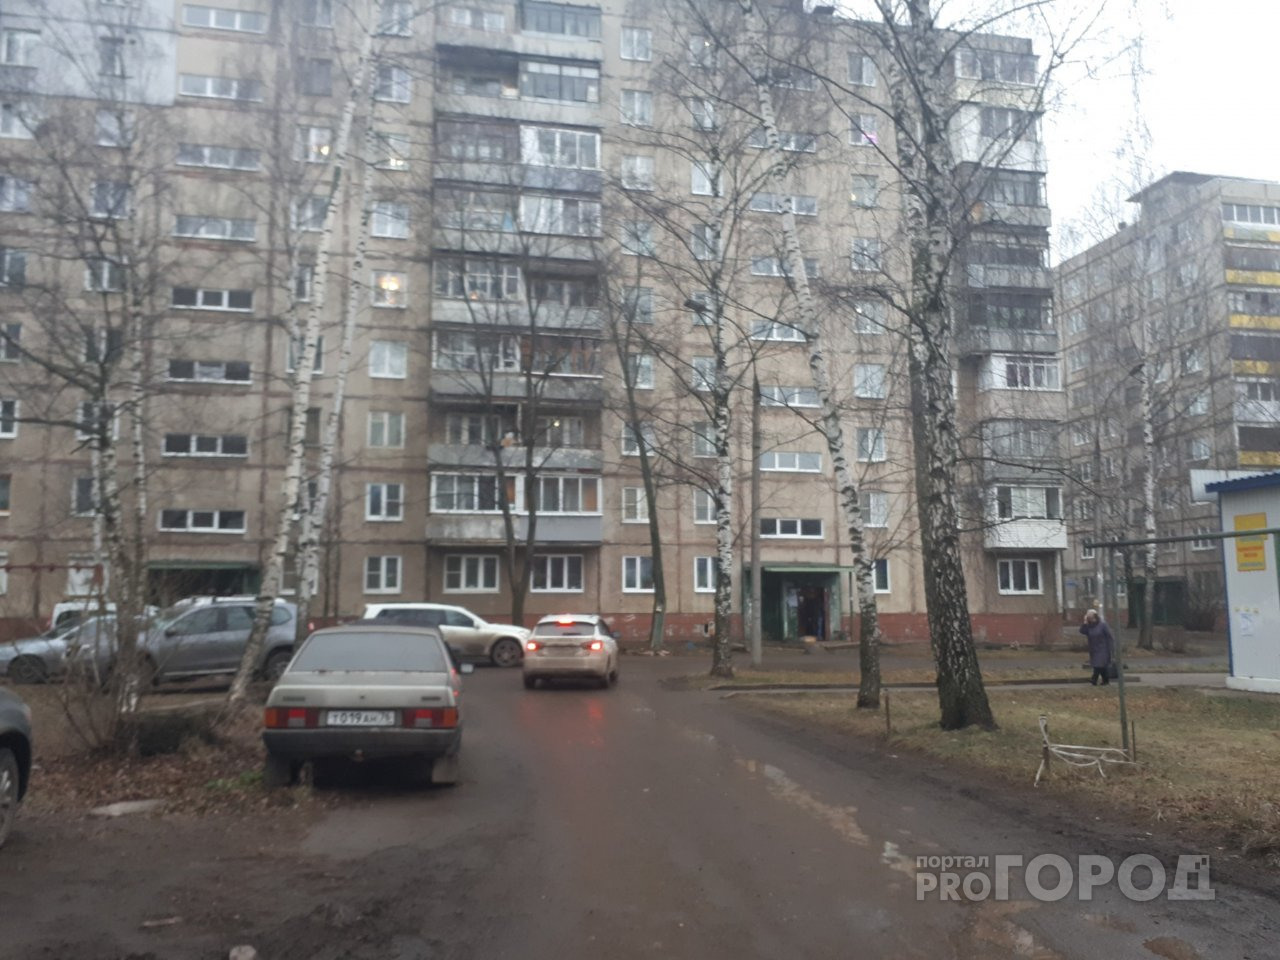 Подвисшую между 4 и 5 этажом женщину спасли в Ярославле